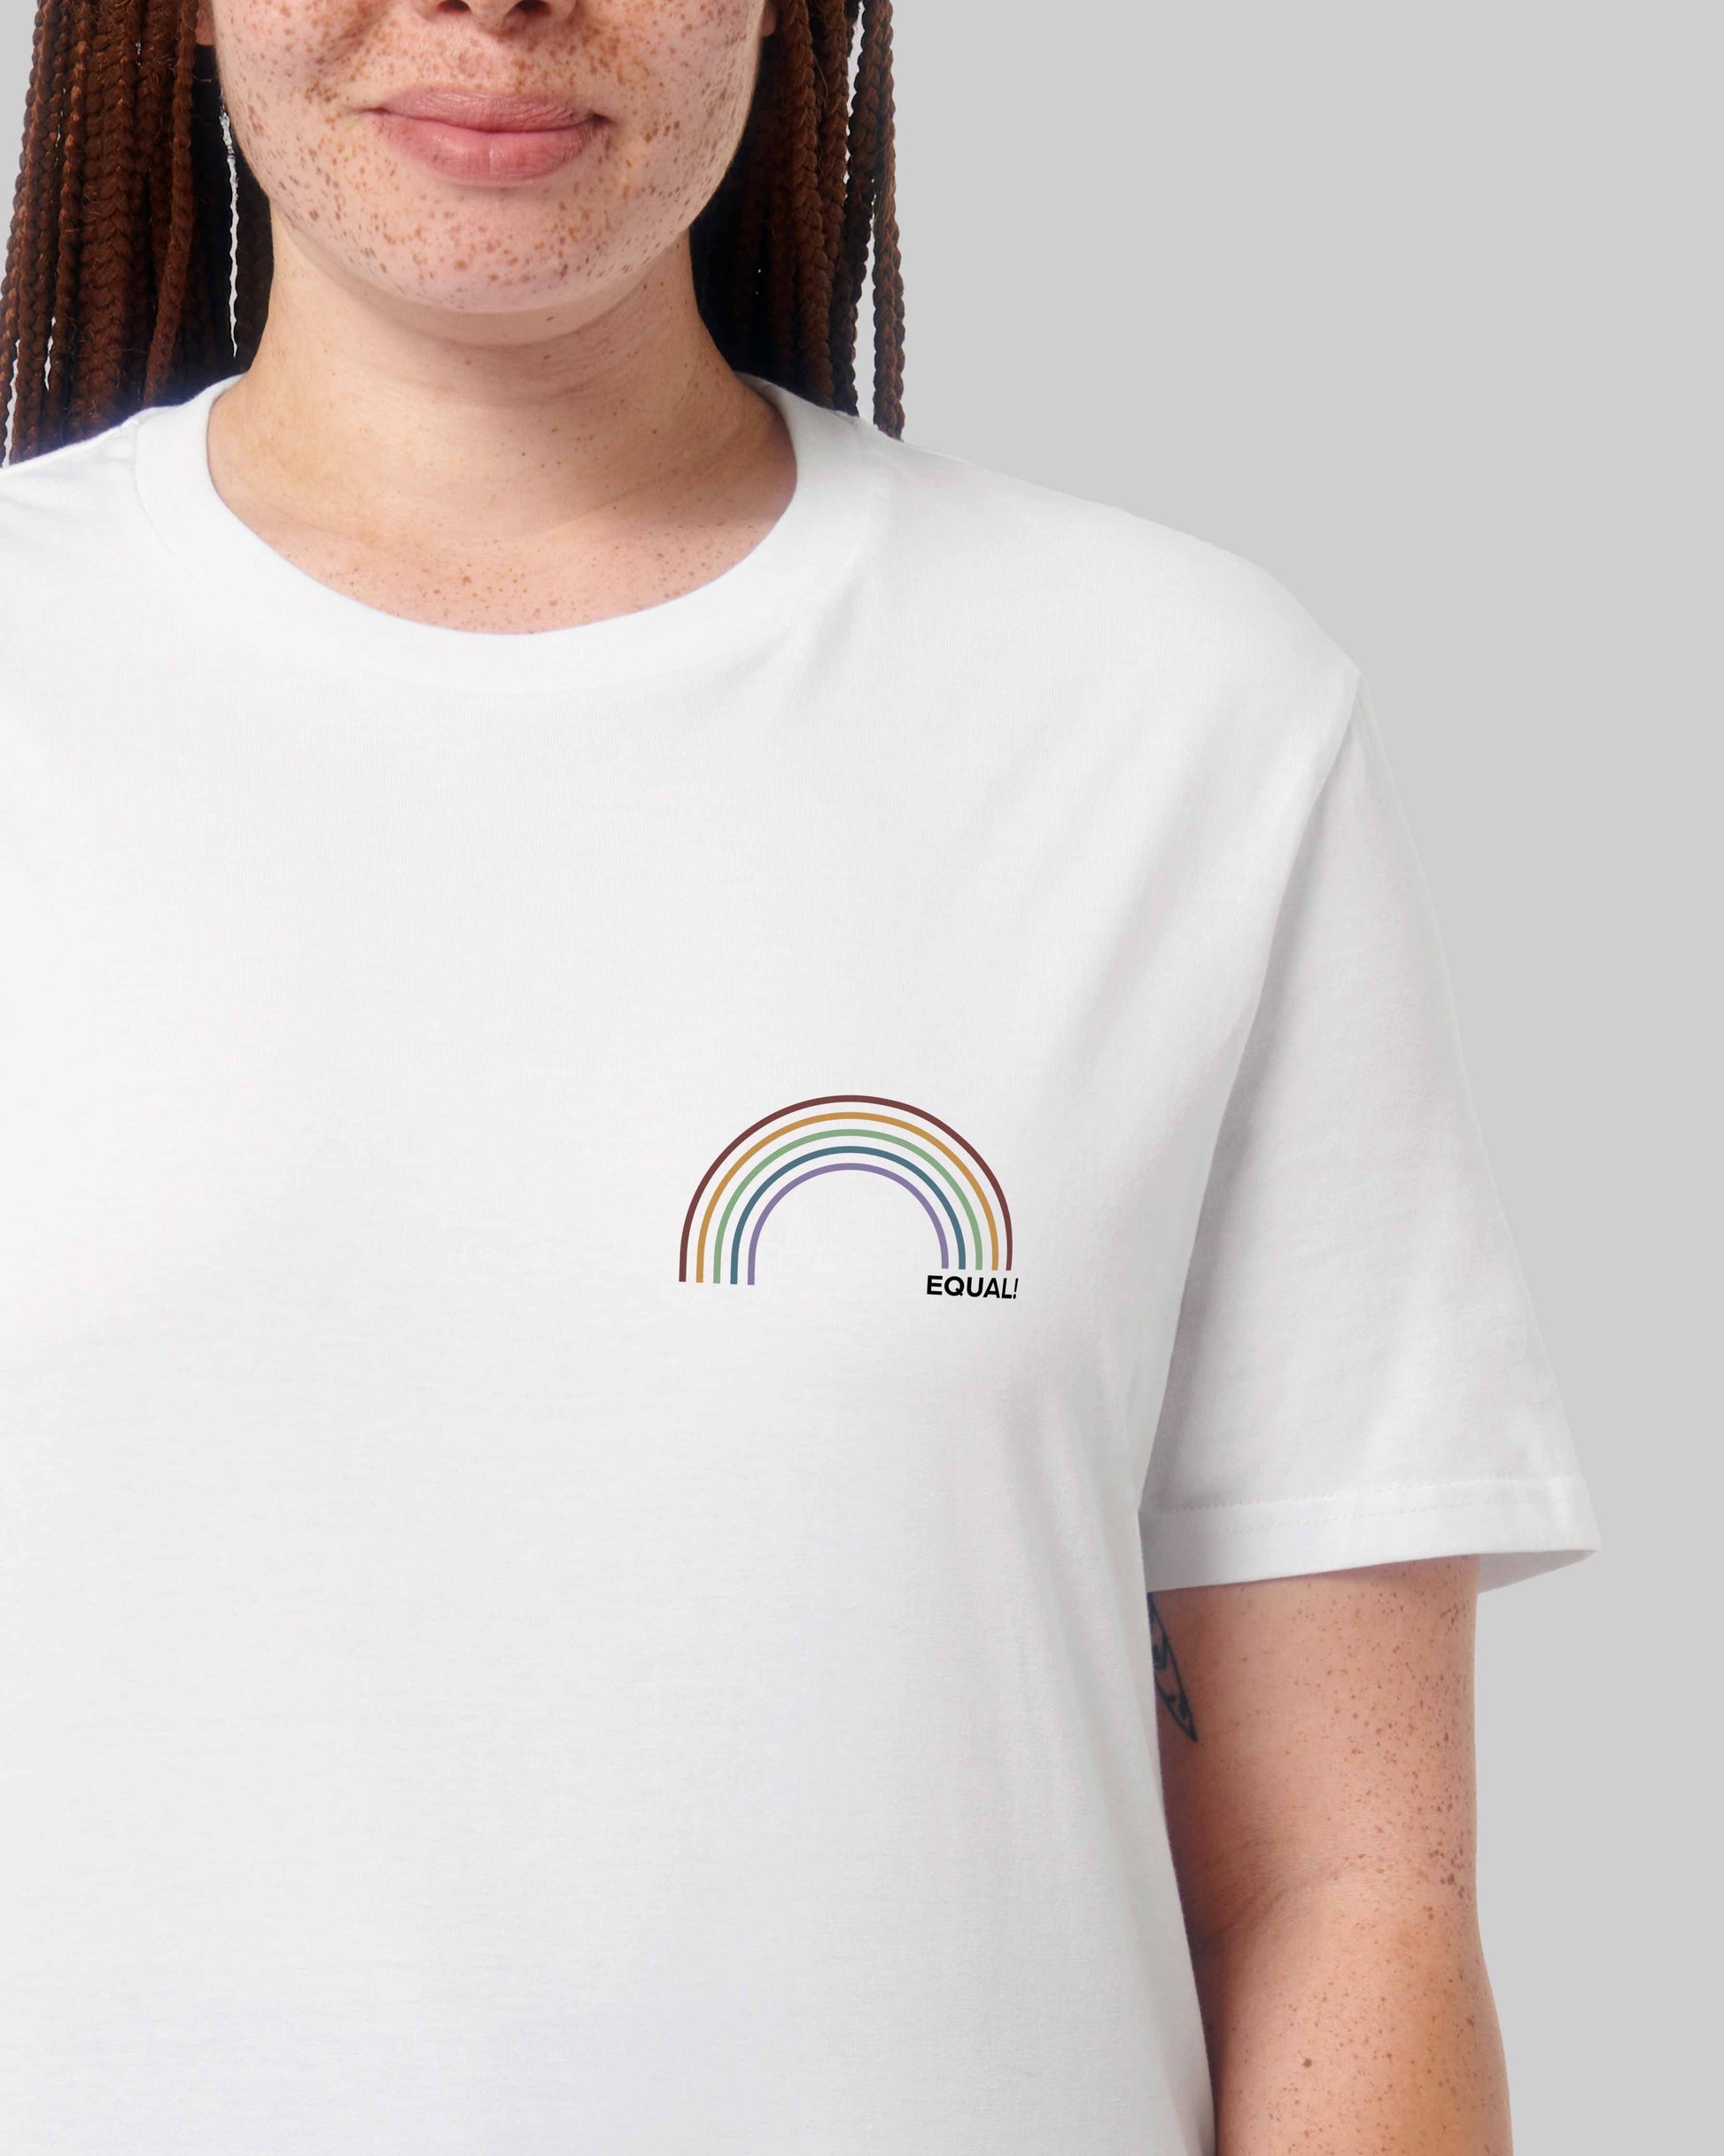 EINHORST® unisex Organic Shirt in weiß mit dem Motiv "equal-Regenbogen" in der Kombination bunter Regenbogen mit schwarzer Schrift, Bild von weiblicher Person mit Shirt